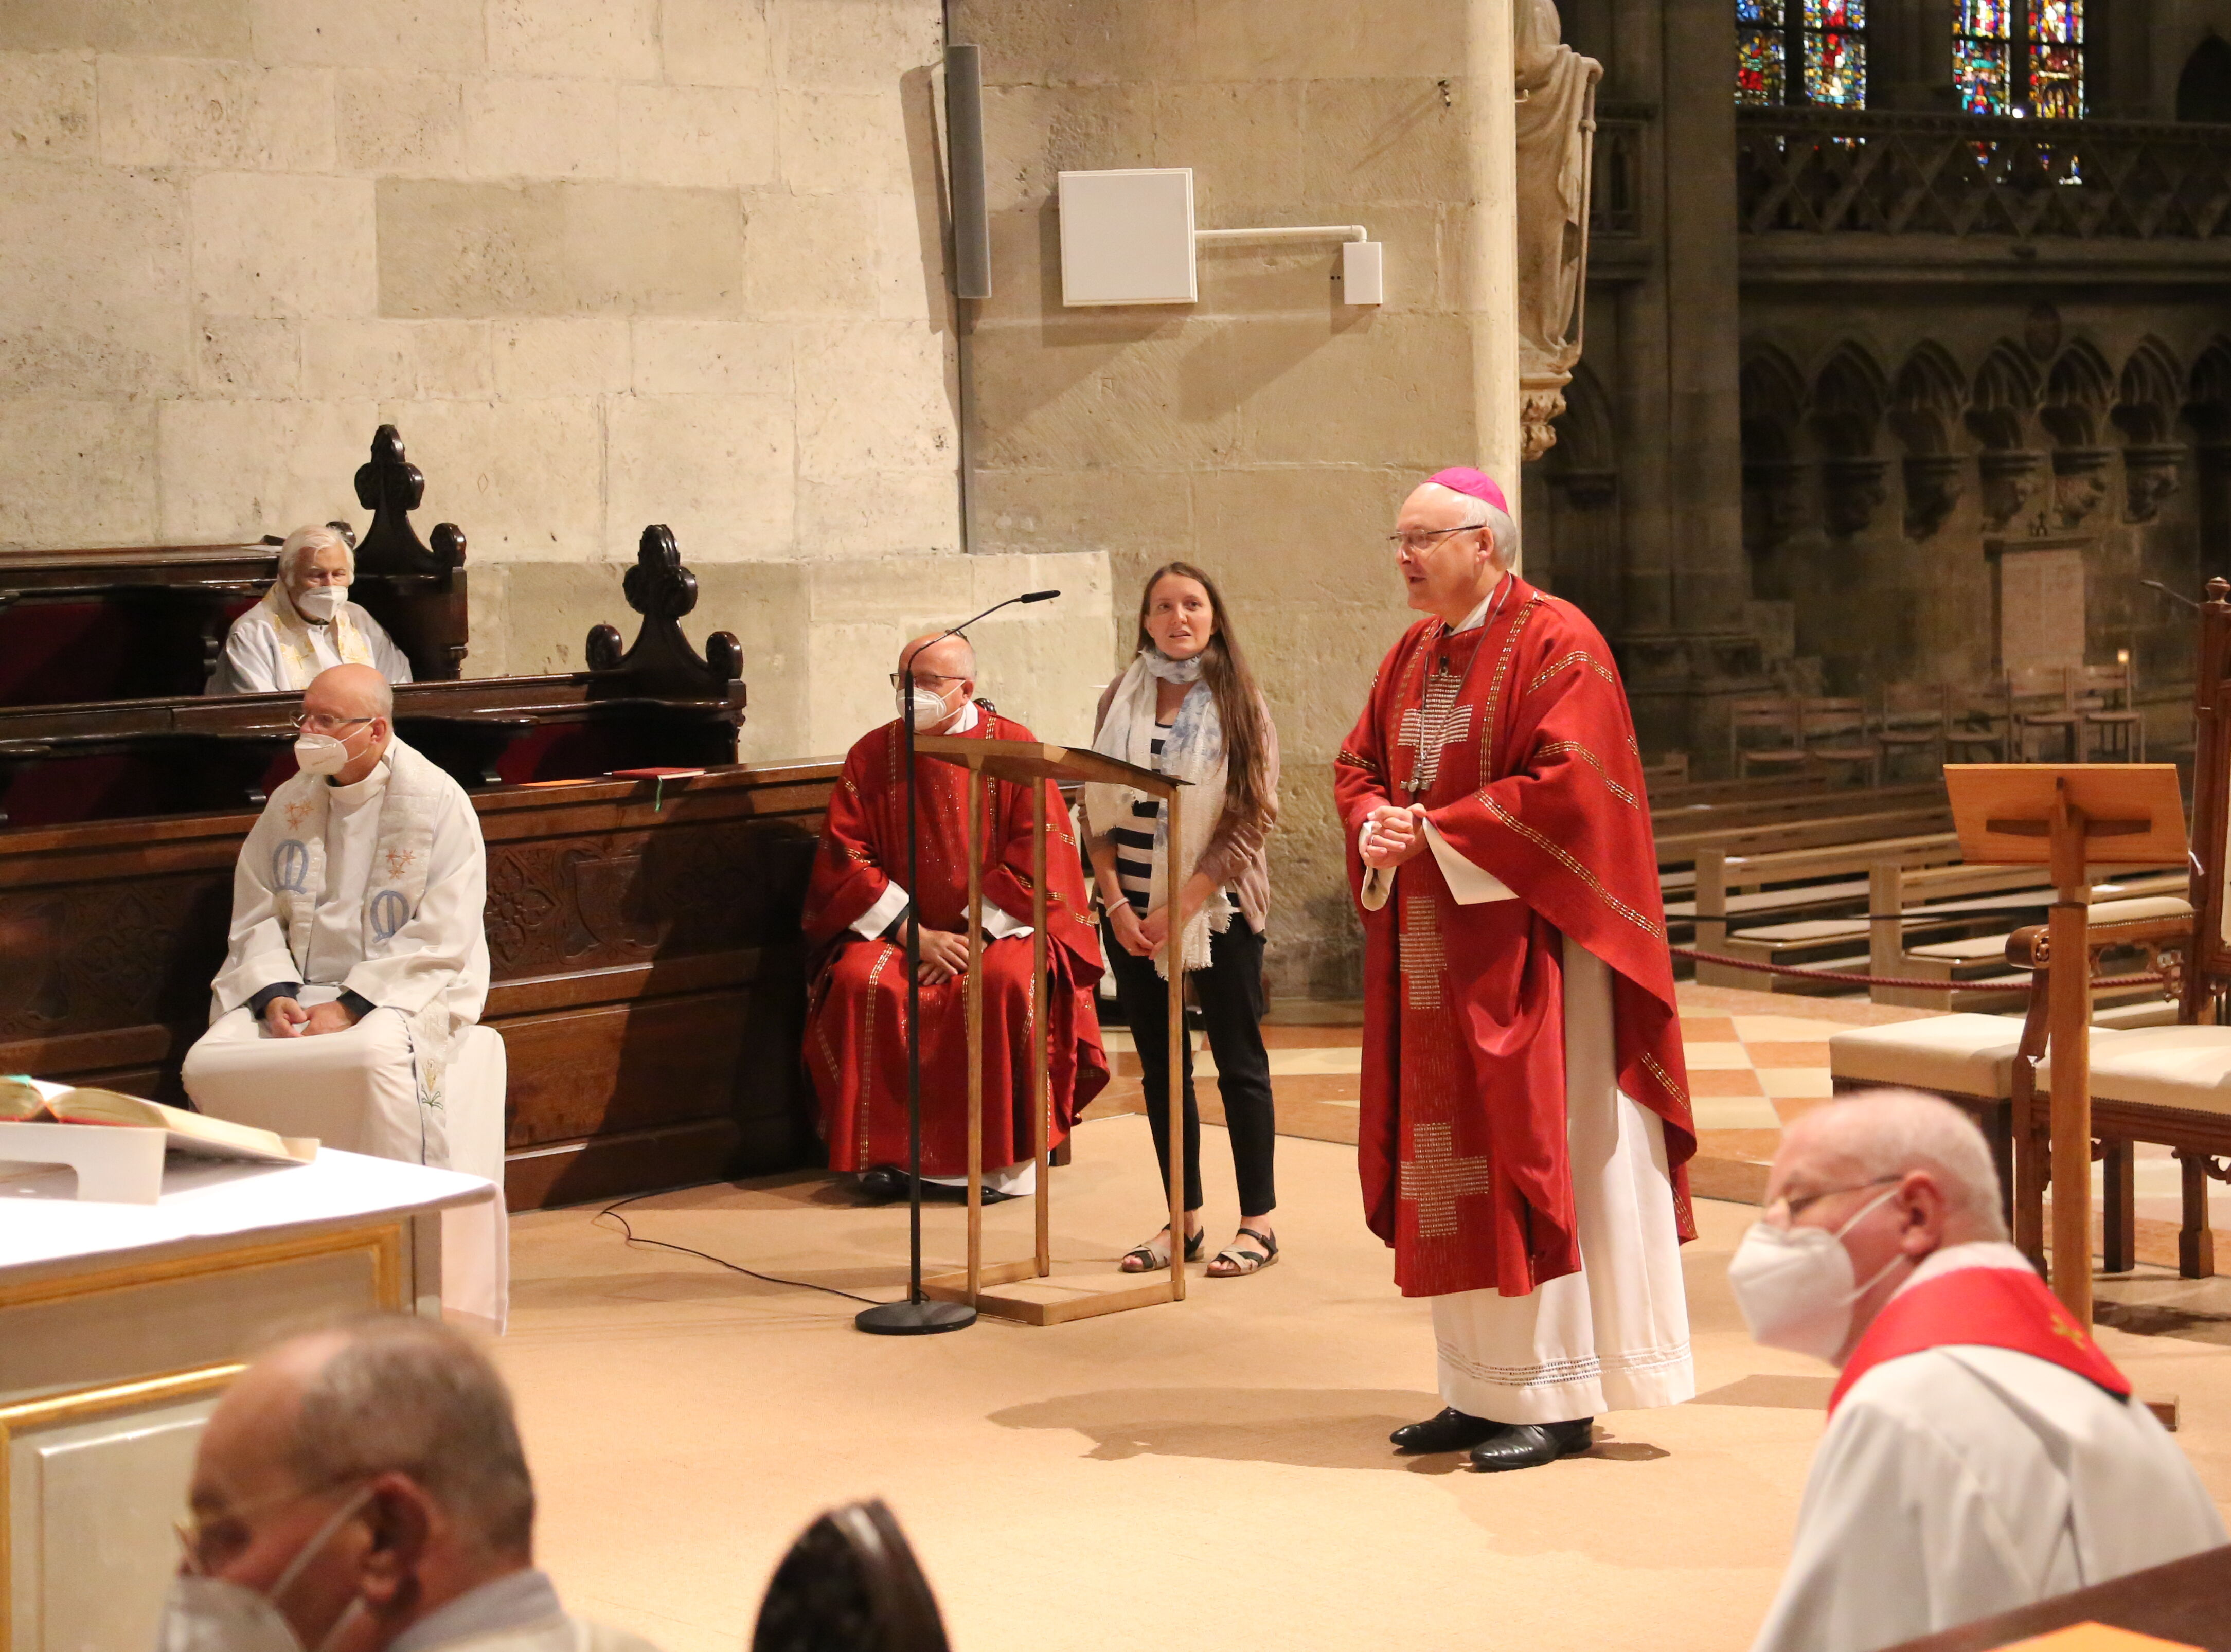 Bischof Rudolf sprach in seiner Predigt über den barocken Hochaltar des Doms St. Peter.